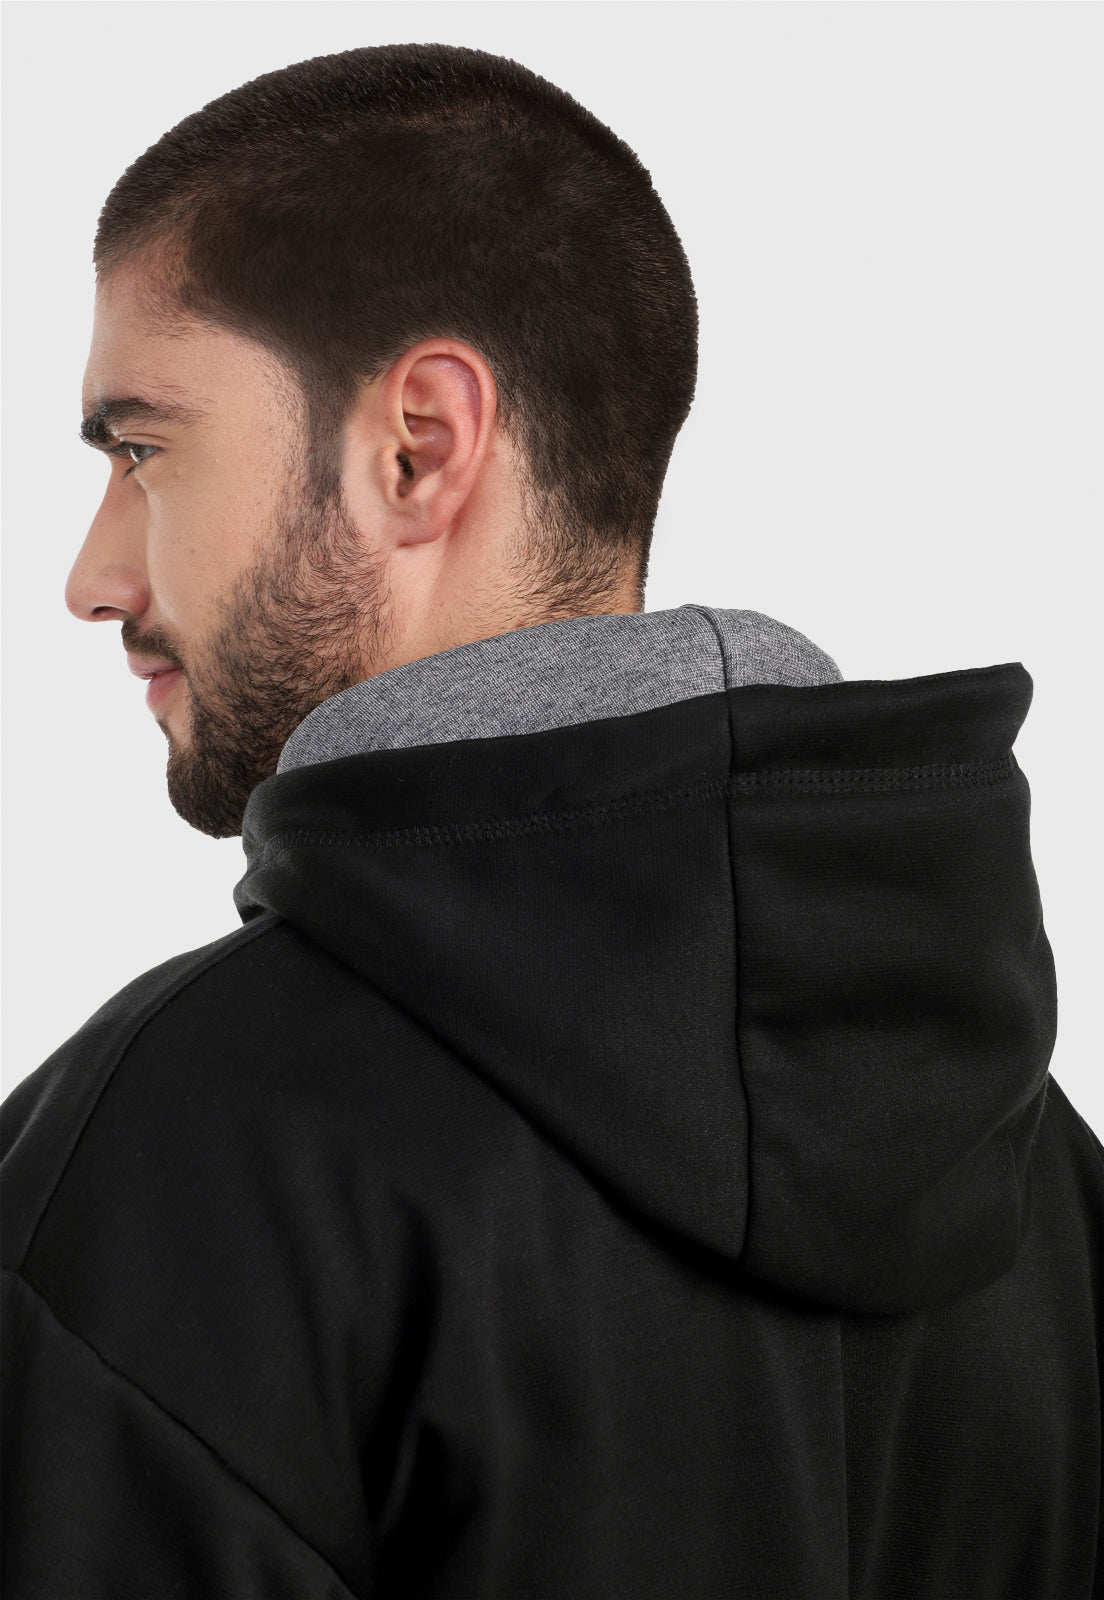 Detalle en capota de hombre vistiendo el buzo hoodie negro y gris para hombre con capota forrada gris.